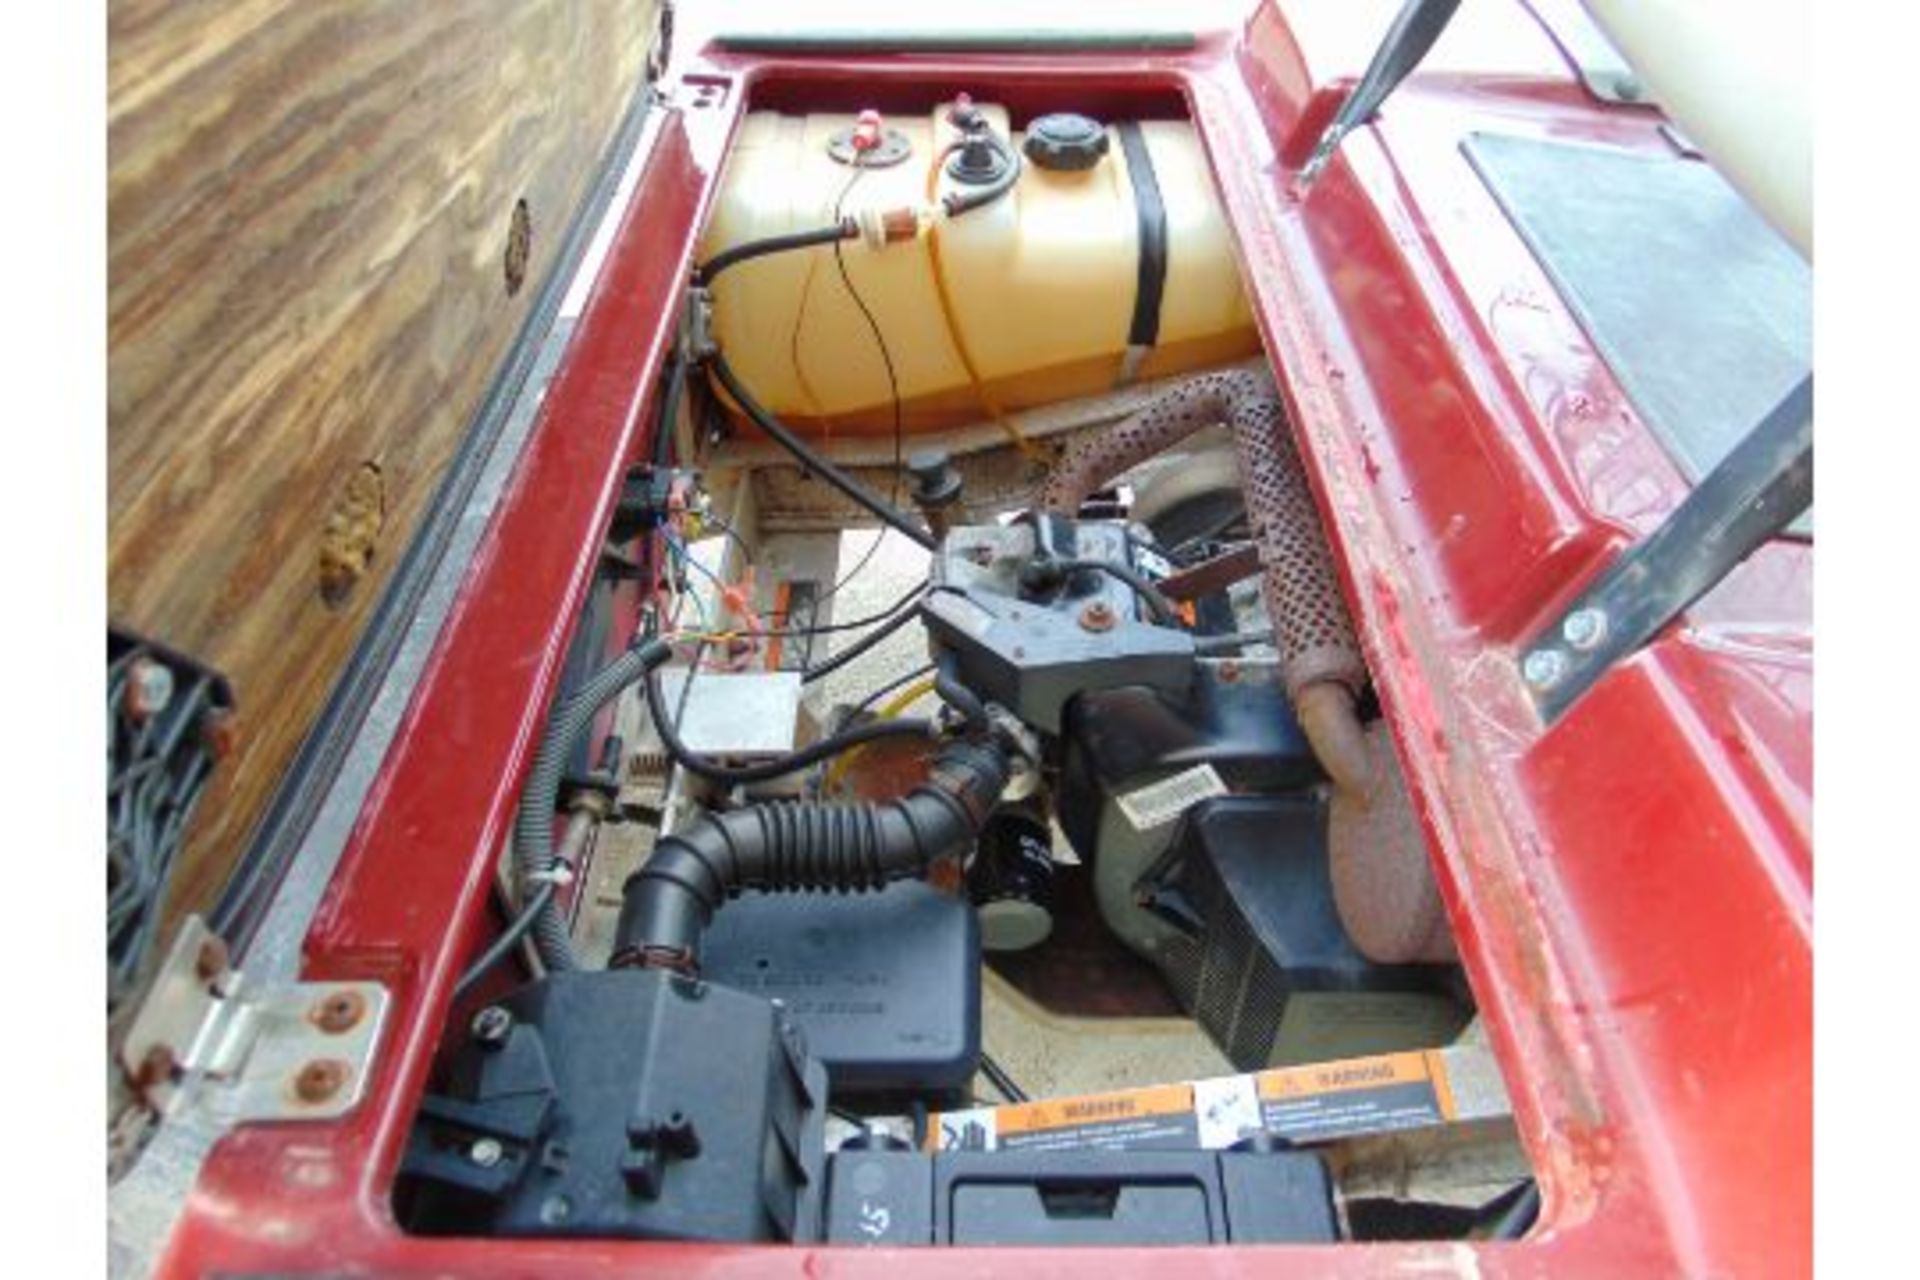 Club Car Golf Cart - Petrol Engine - Image 14 of 17